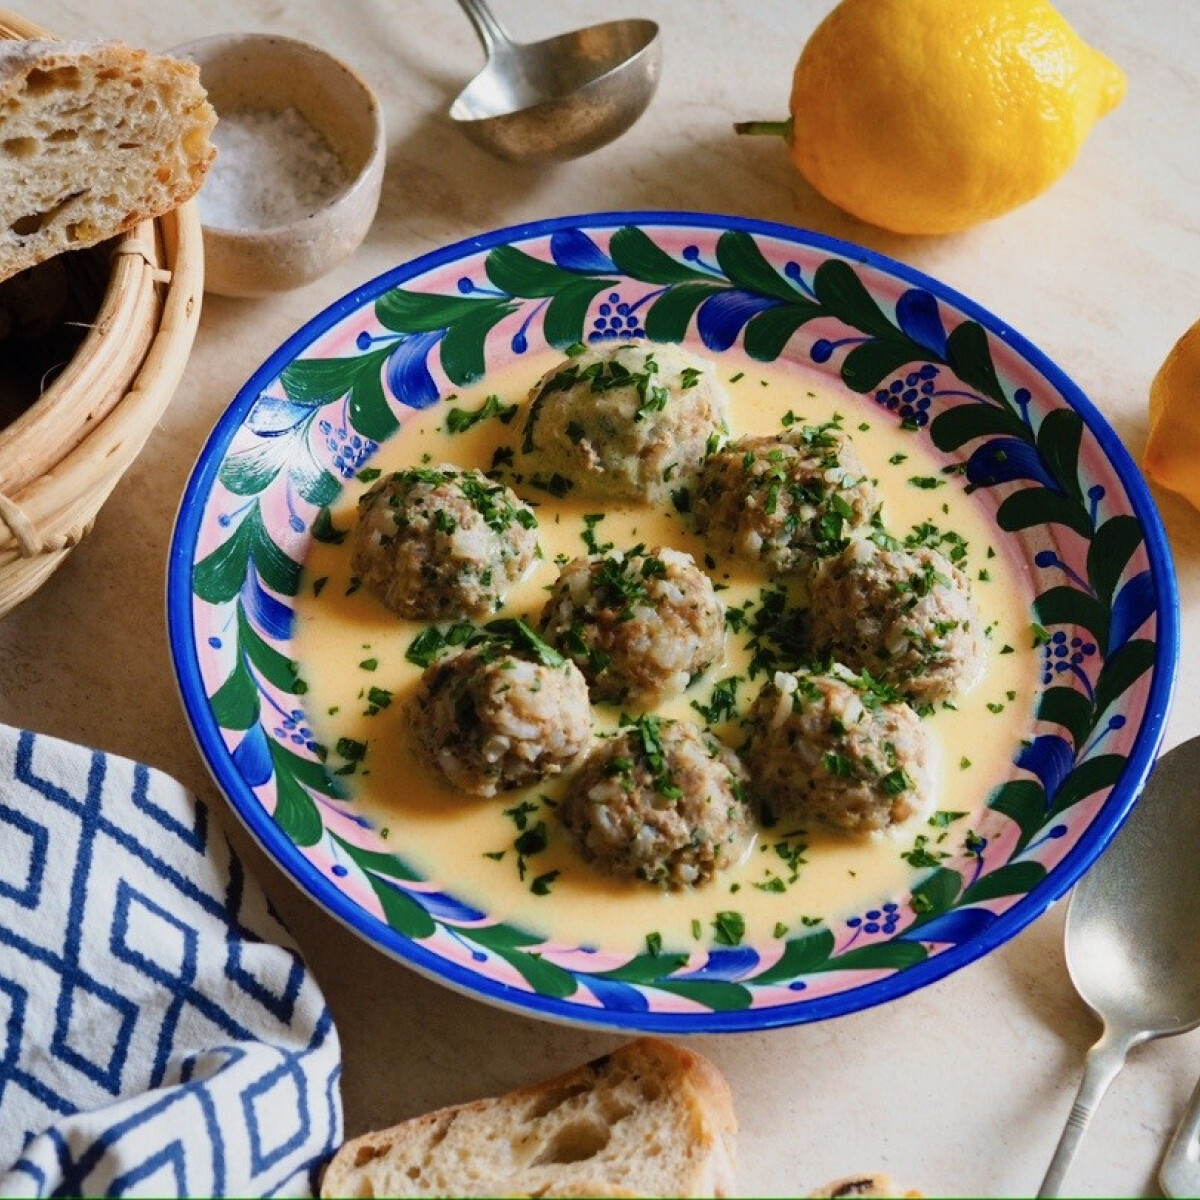 Görgess görög húsgolyóbisokat, és úsztasd őket citrommártásban